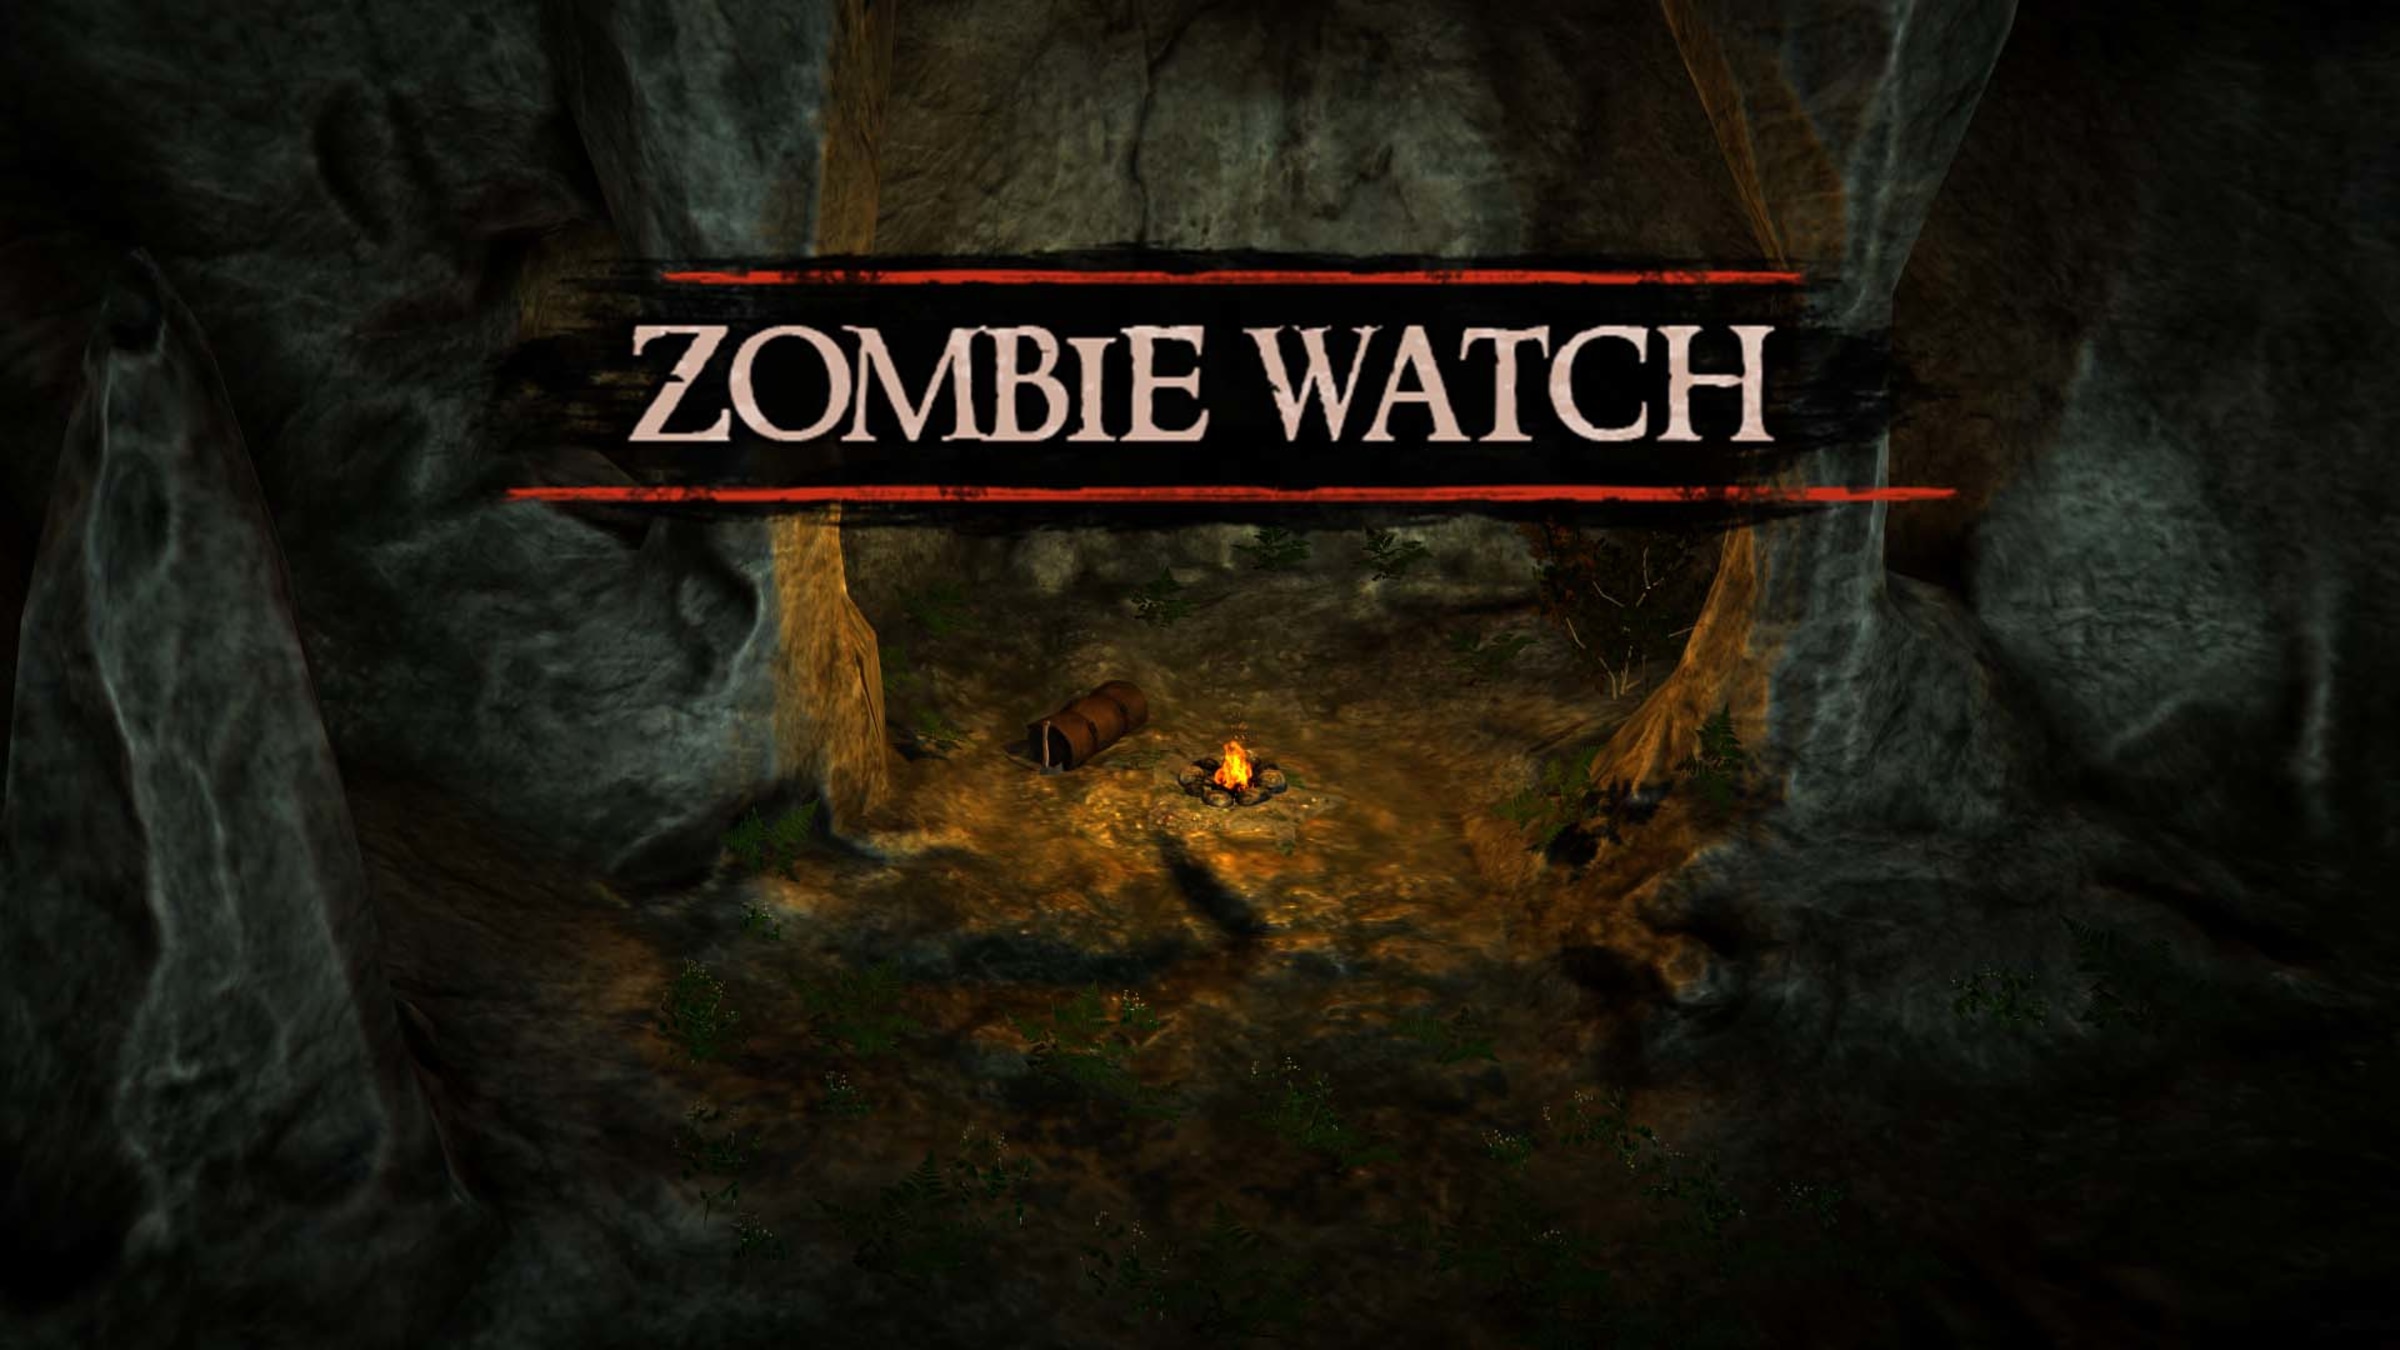 Zombie nintendo switch. Zombie watch.